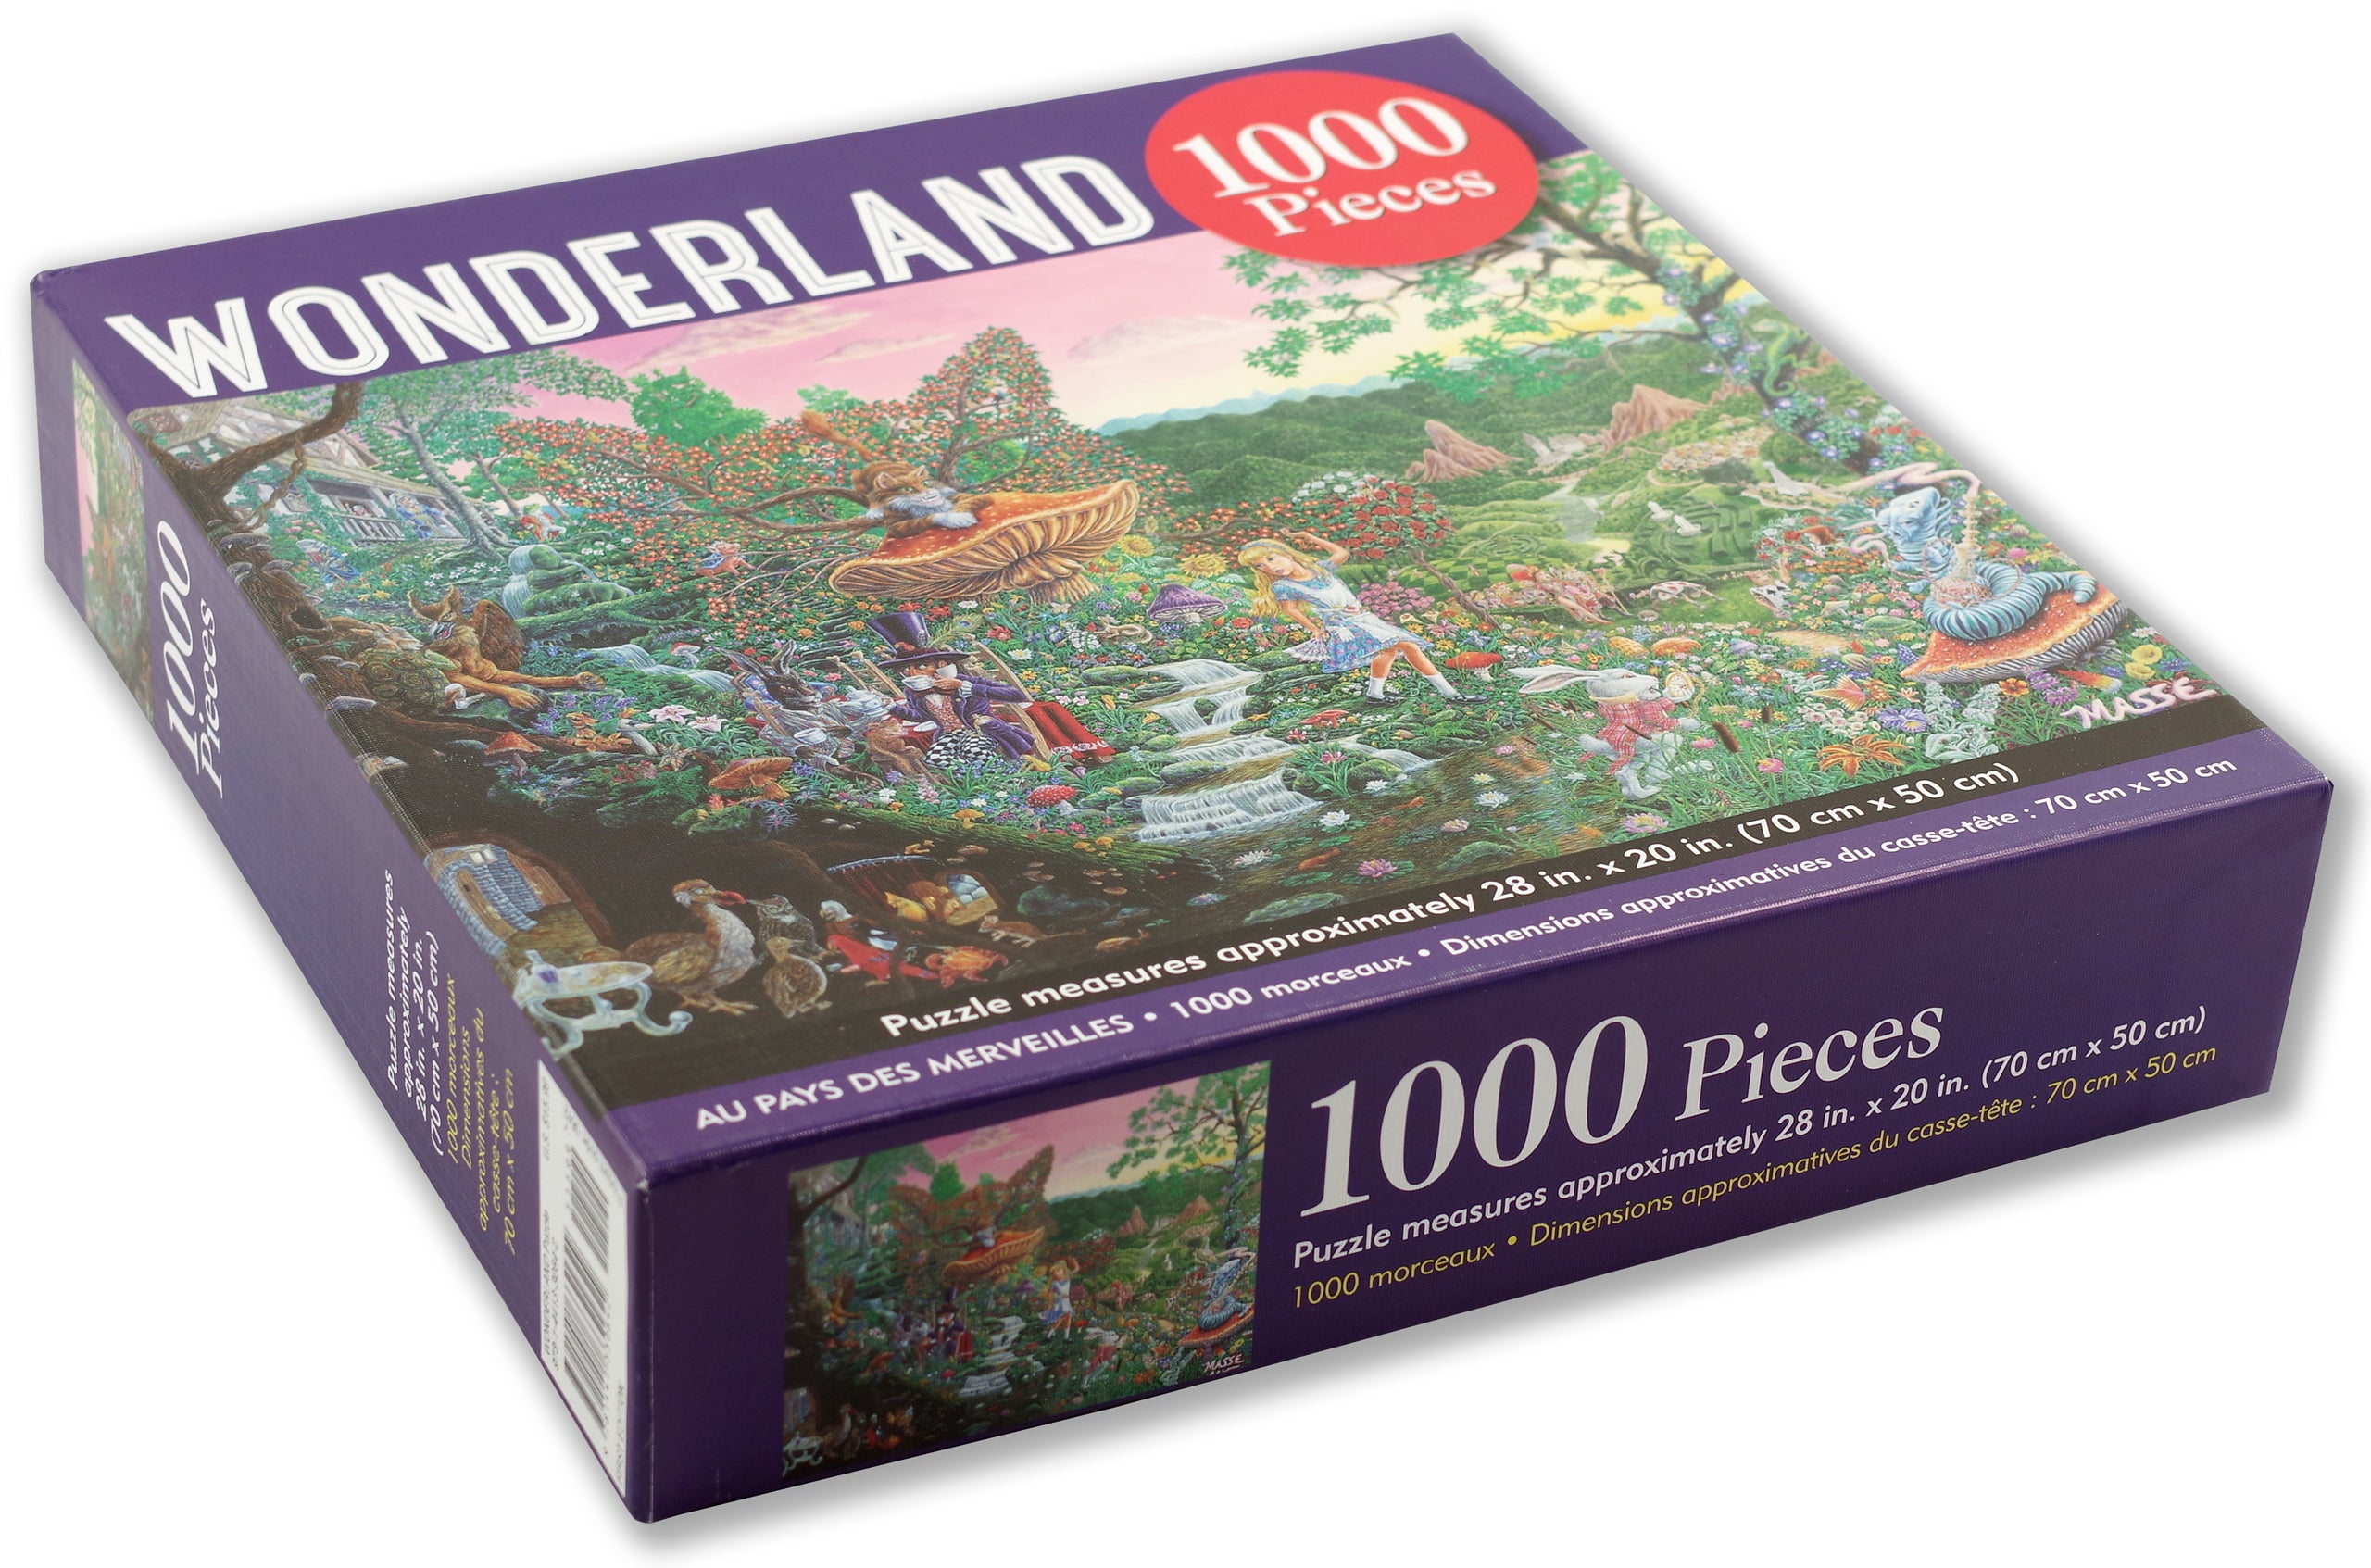 Wonderland 1000 Piece Puzzle    